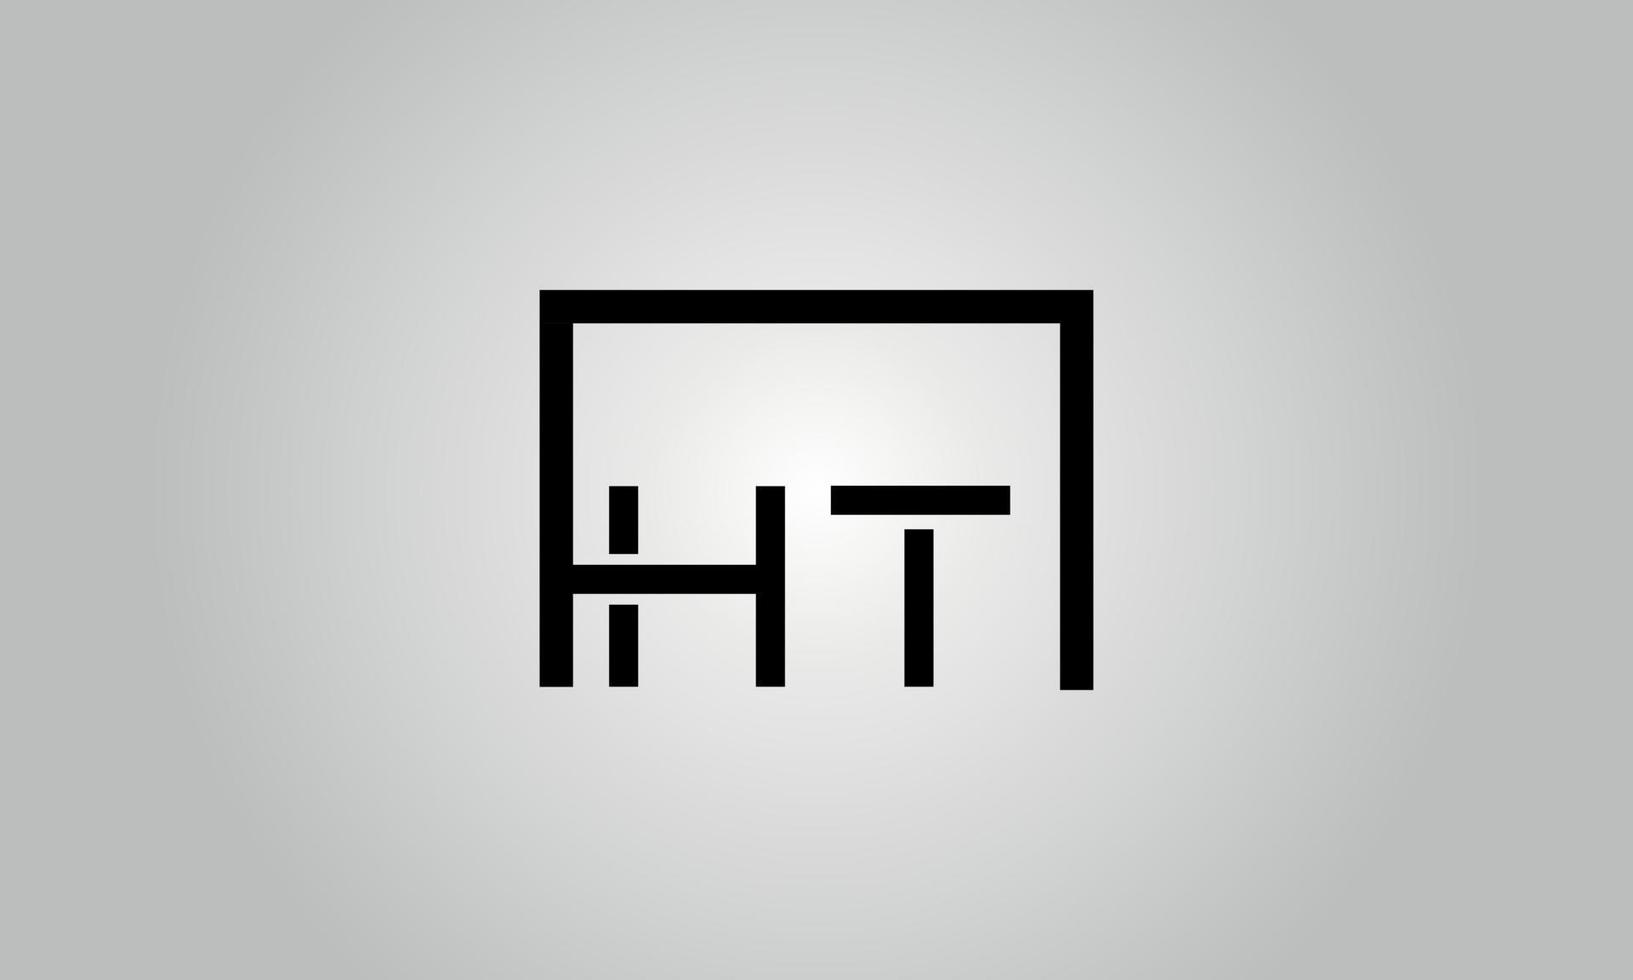 design de logotipo letra ht. ht logotipo com forma quadrada em modelo de vetor livre de vetor de cores pretas.